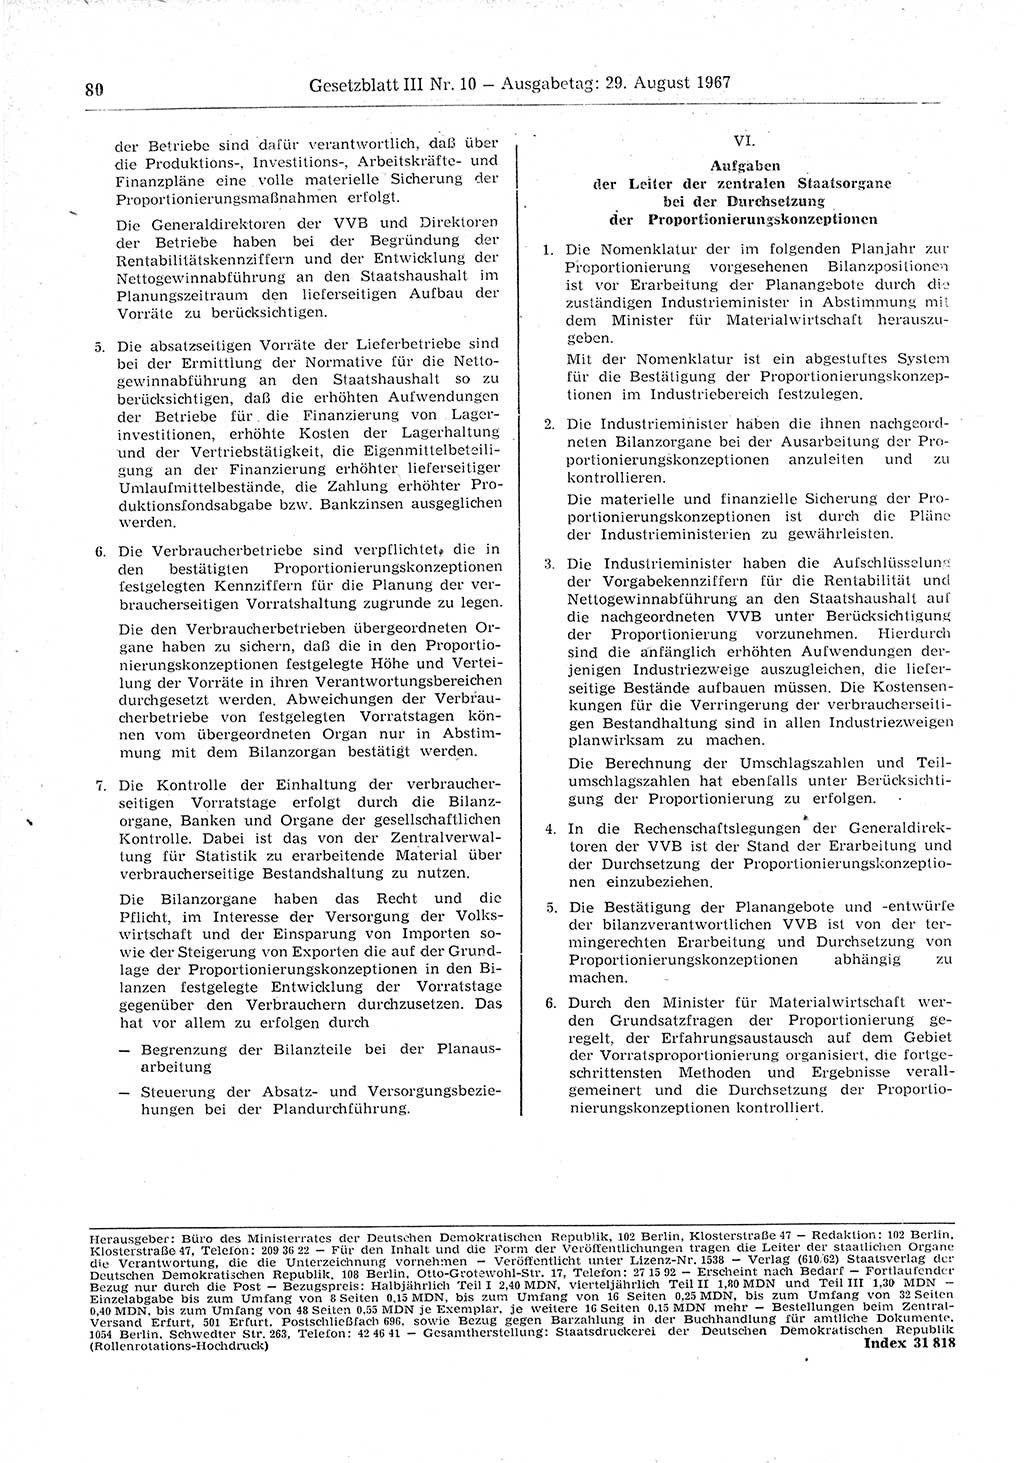 Gesetzblatt (GBl.) der Deutschen Demokratischen Republik (DDR) Teil ⅠⅠⅠ 1967, Seite 80 (GBl. DDR ⅠⅠⅠ 1967, S. 80)